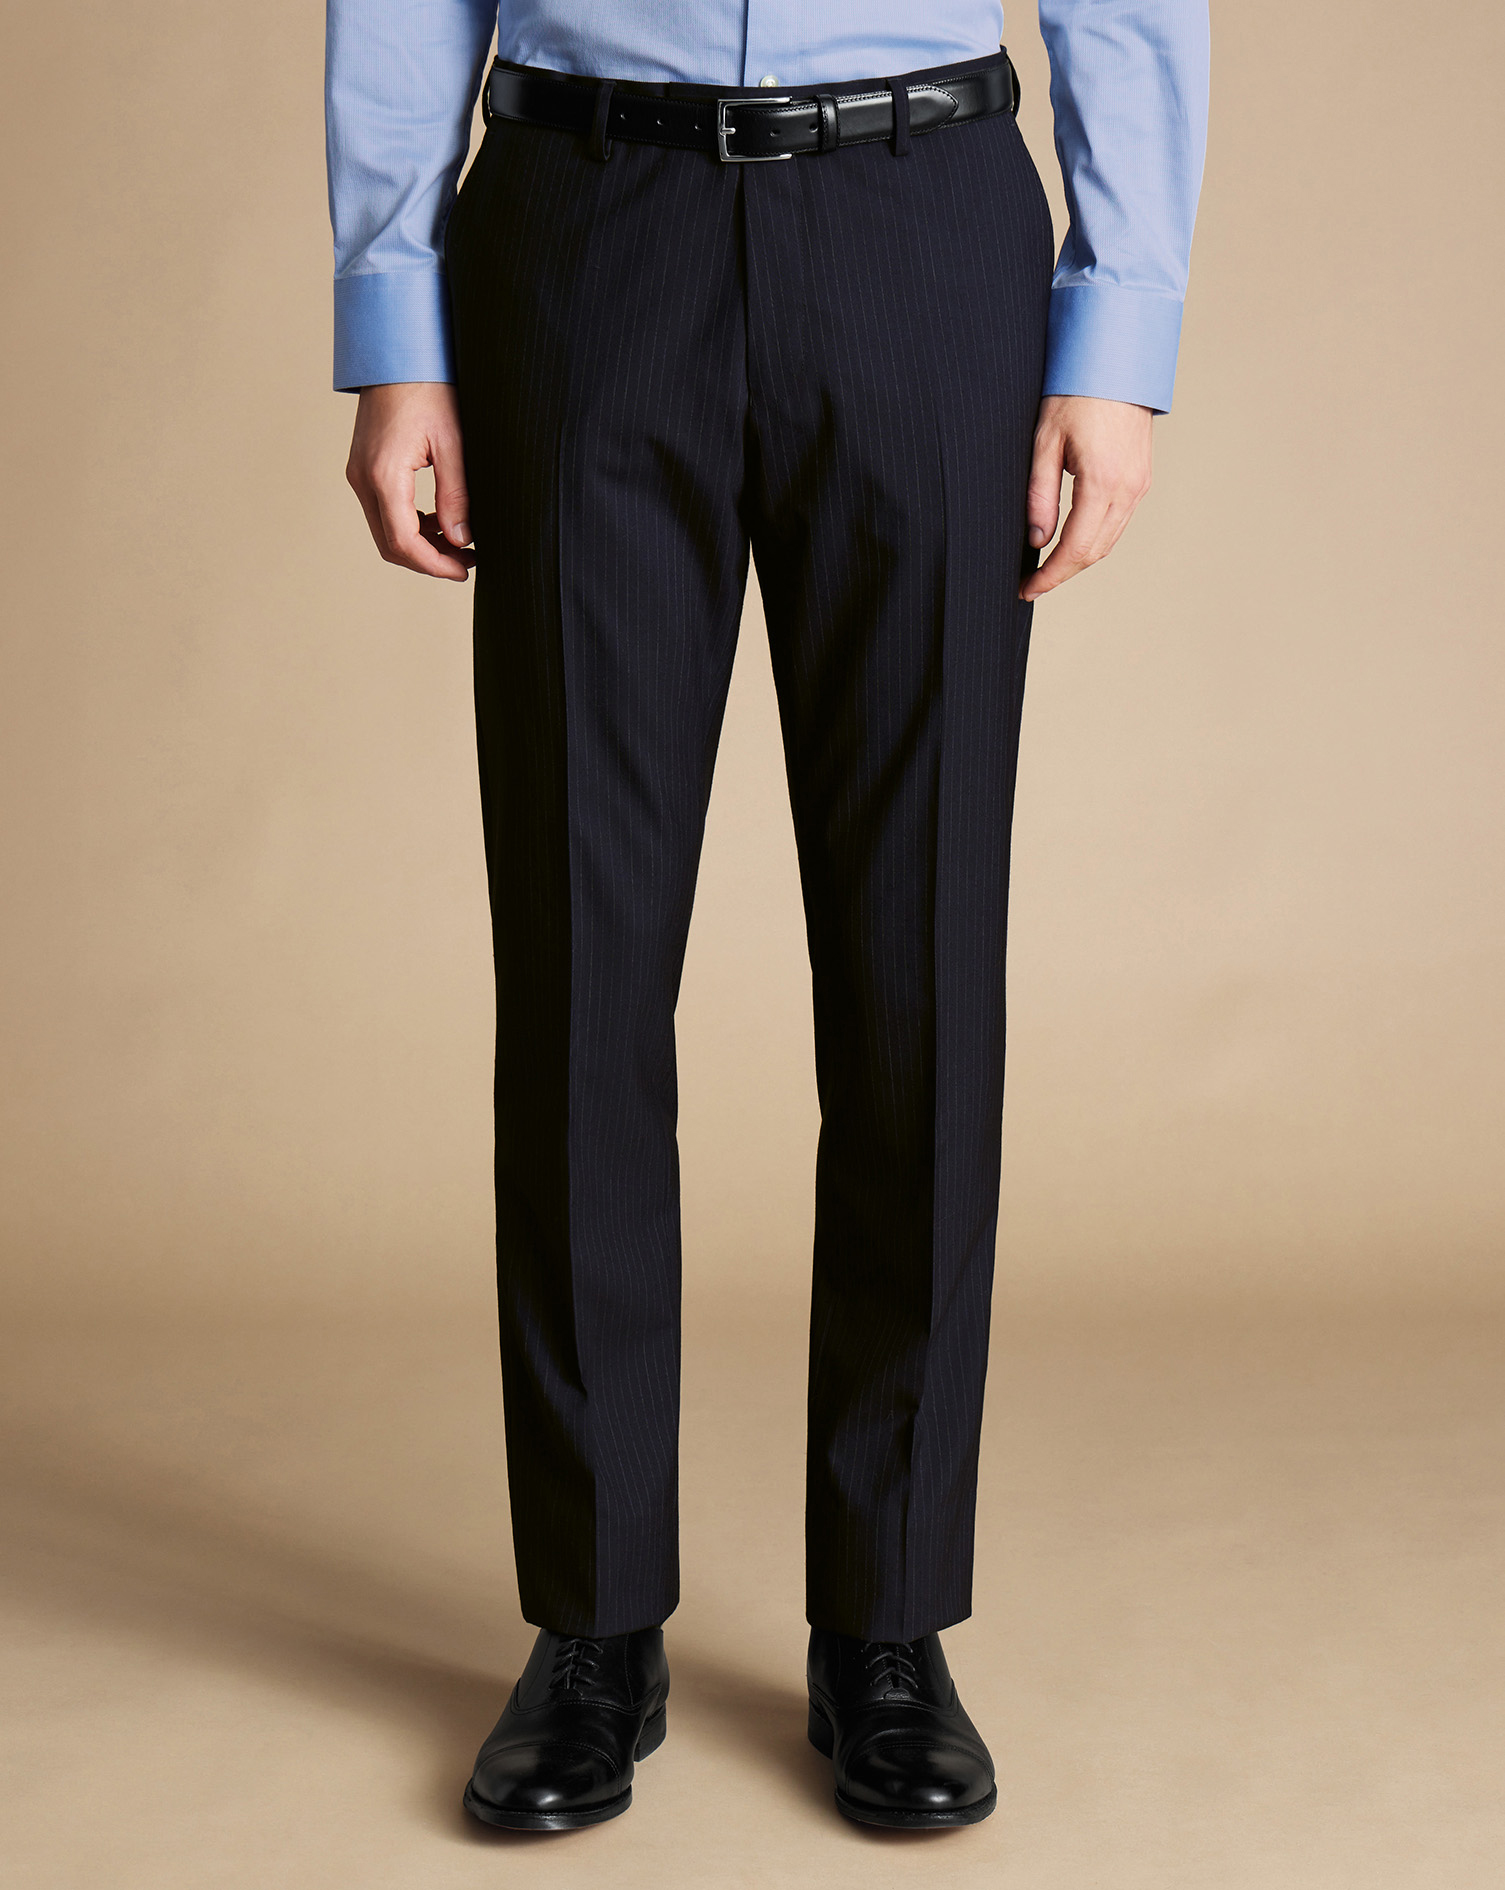 Men's Charles Tyrwhitt Ultimate Performance Stripe Suit Trousers - Dark Navy Size 32/32
